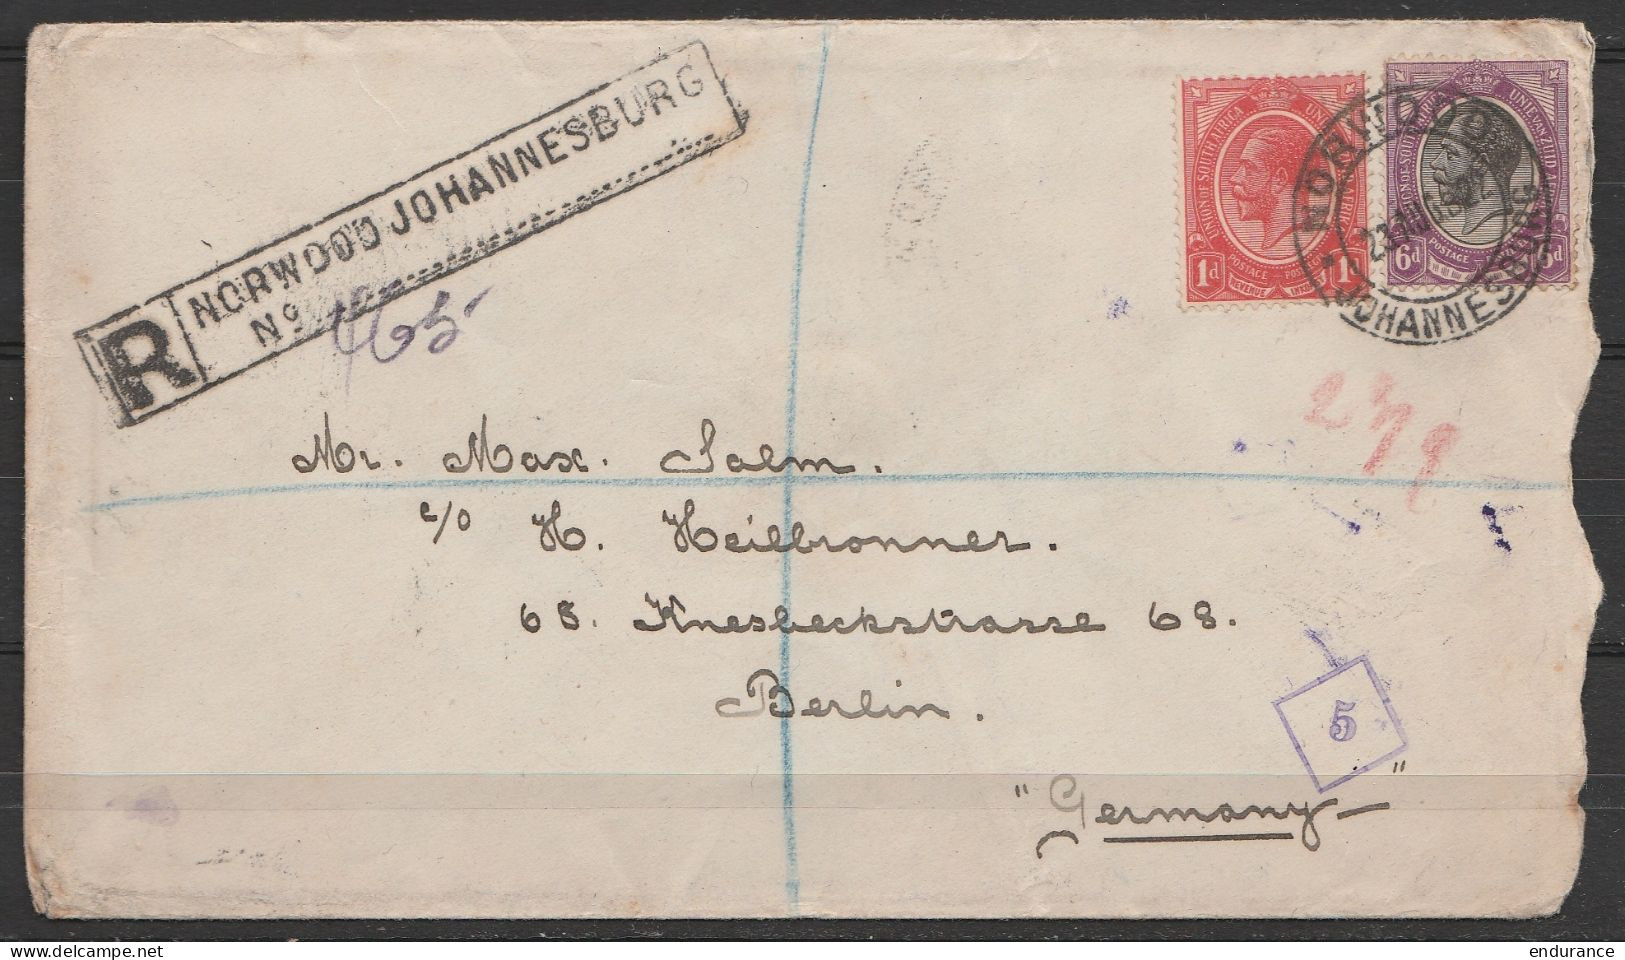 Afrique Du Sud - L. Recommandée Càd NORWOOD JOHANNESBURG 1922 Pour BERLIN / CHARLOTTENBURG (au Dos: Càd CÖLN) - Briefe U. Dokumente